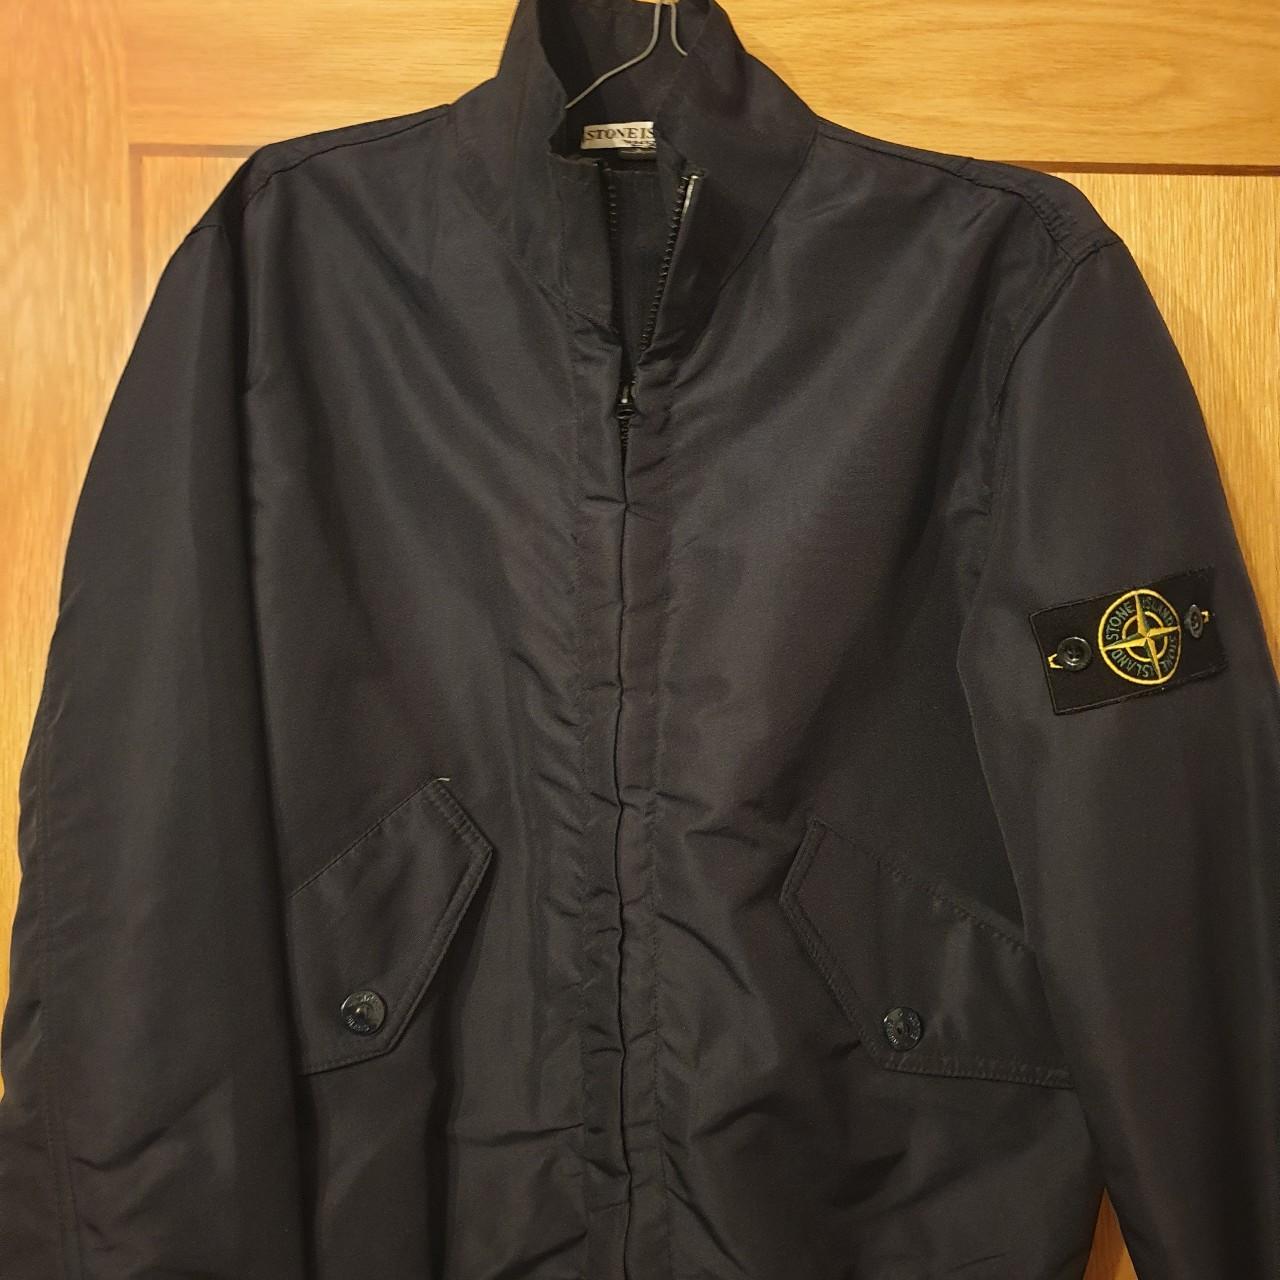 Stone Island navy harrington jacket, small. This... - Depop